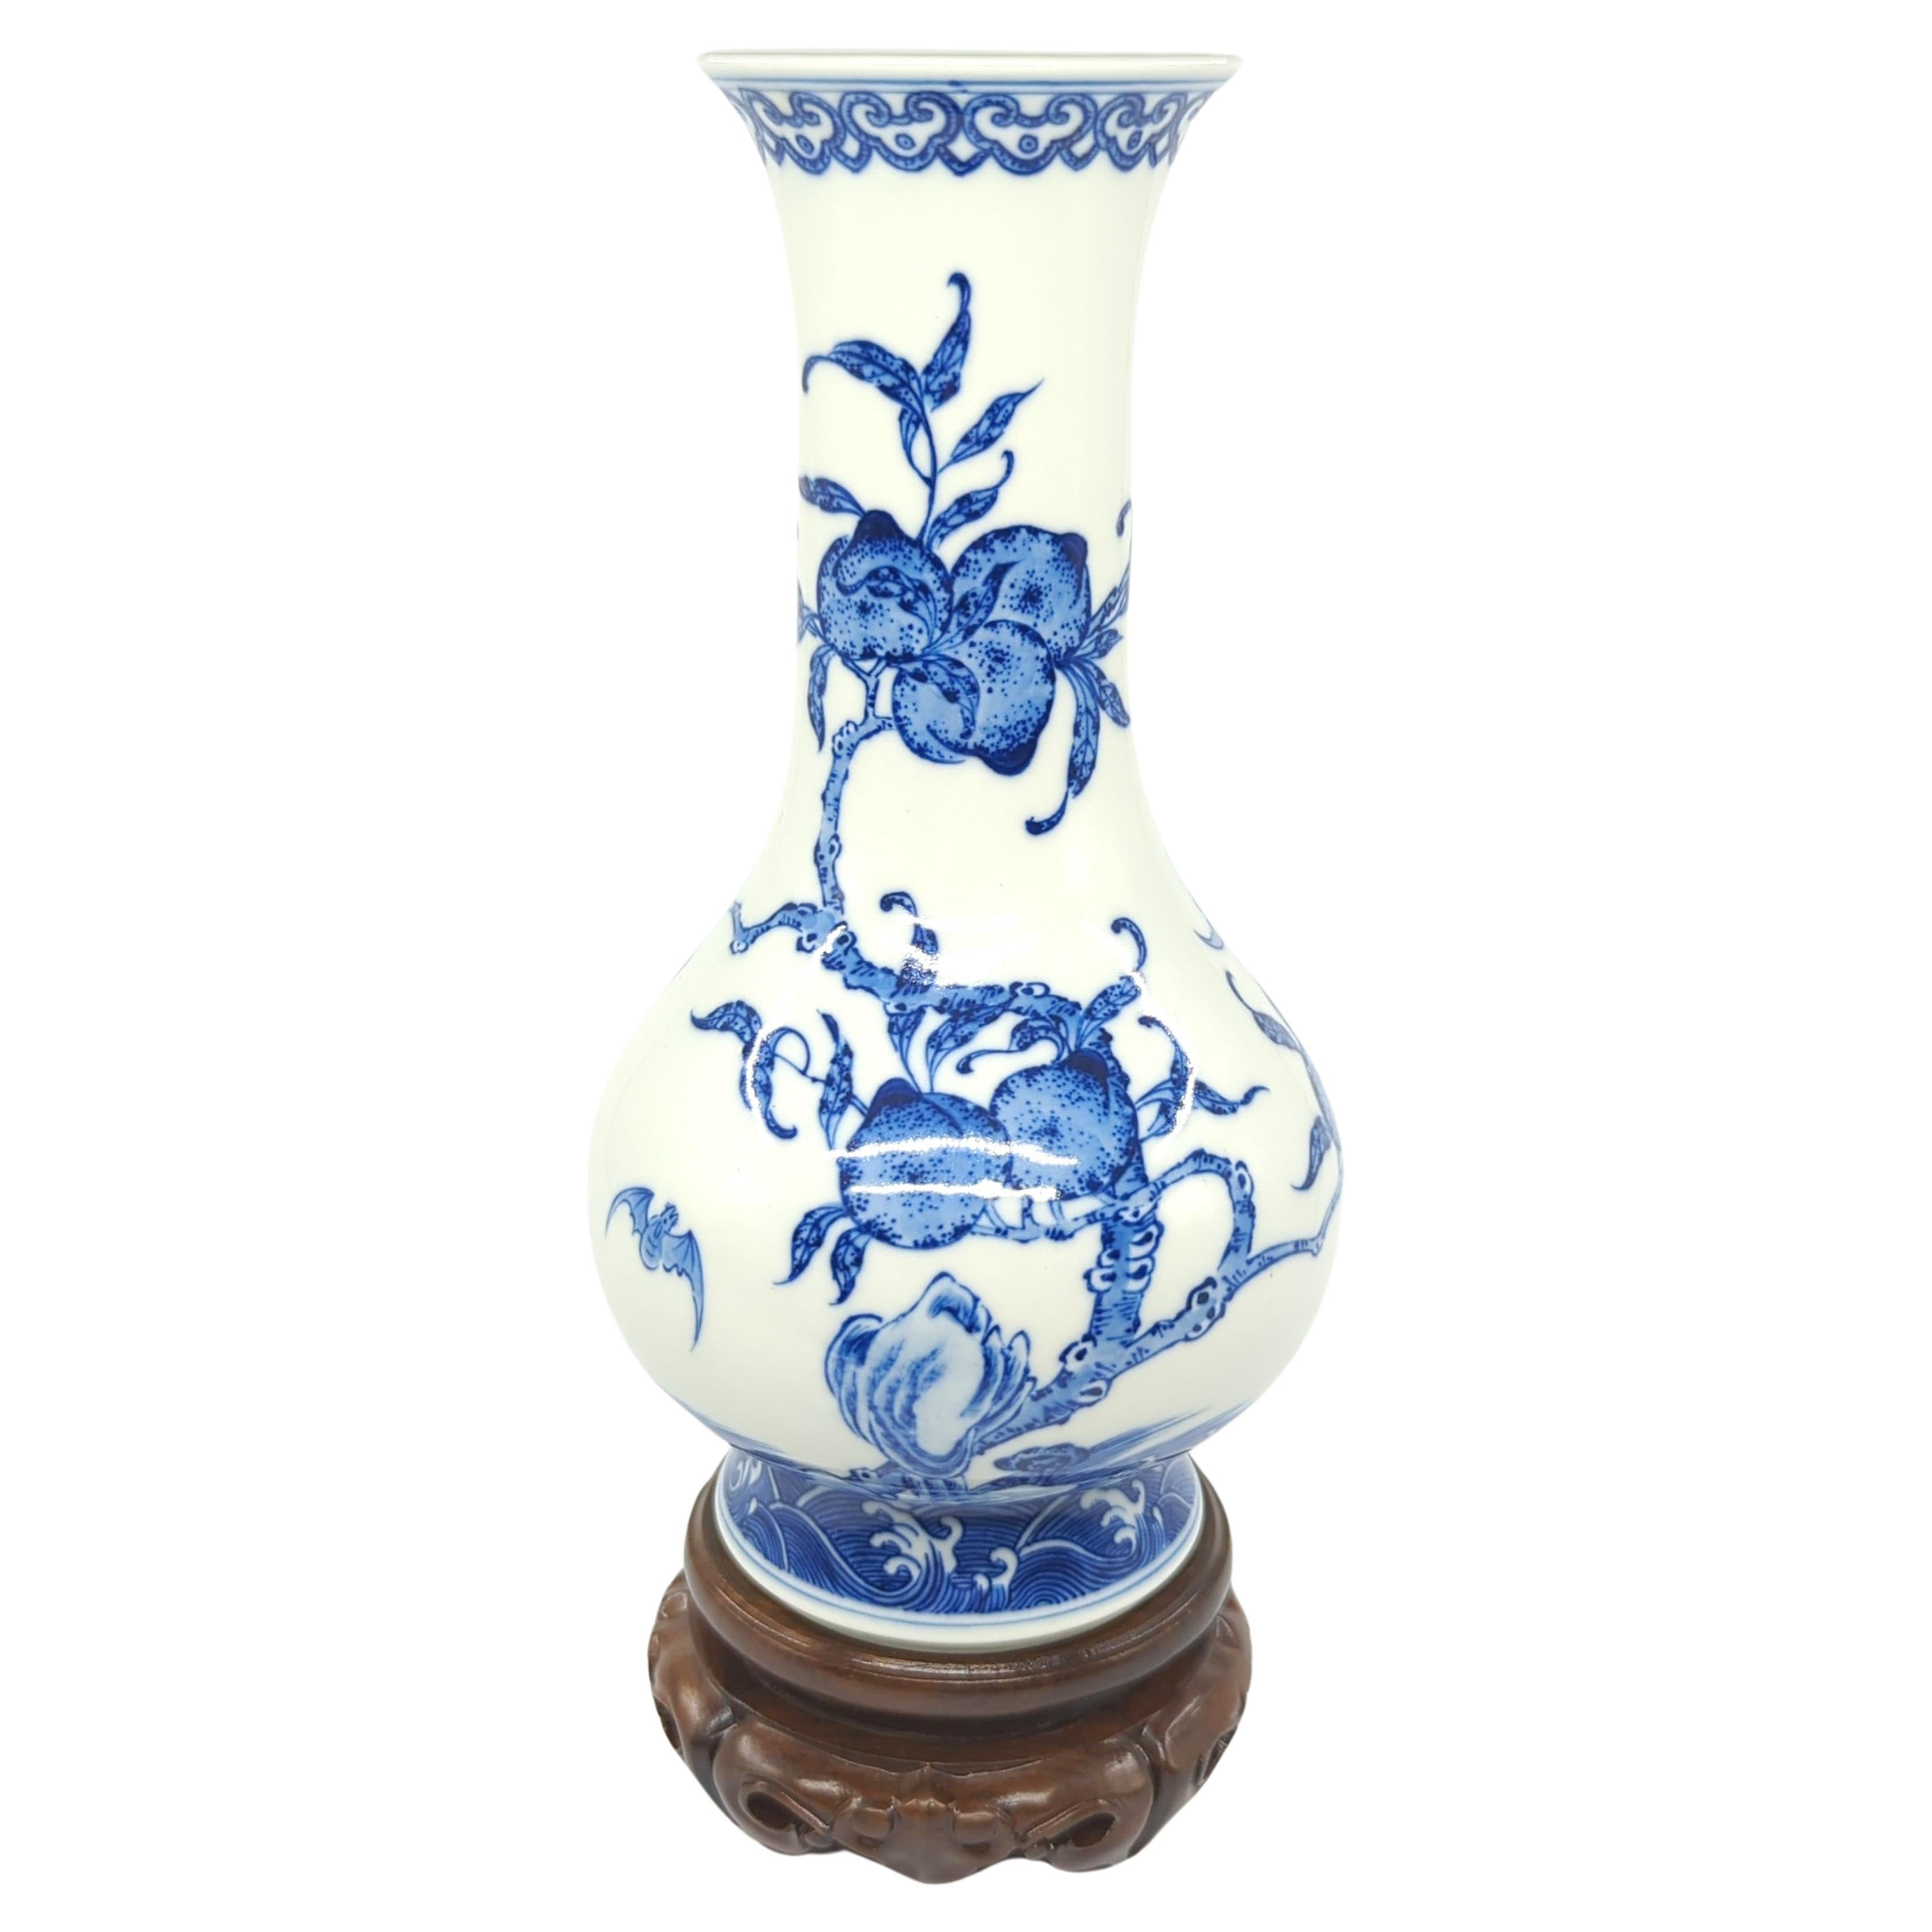 Feines chinesisches Porzellan Unterglasurblau Weiß Fledermäuse Pfirsiche Flasche Vase Stand 20c